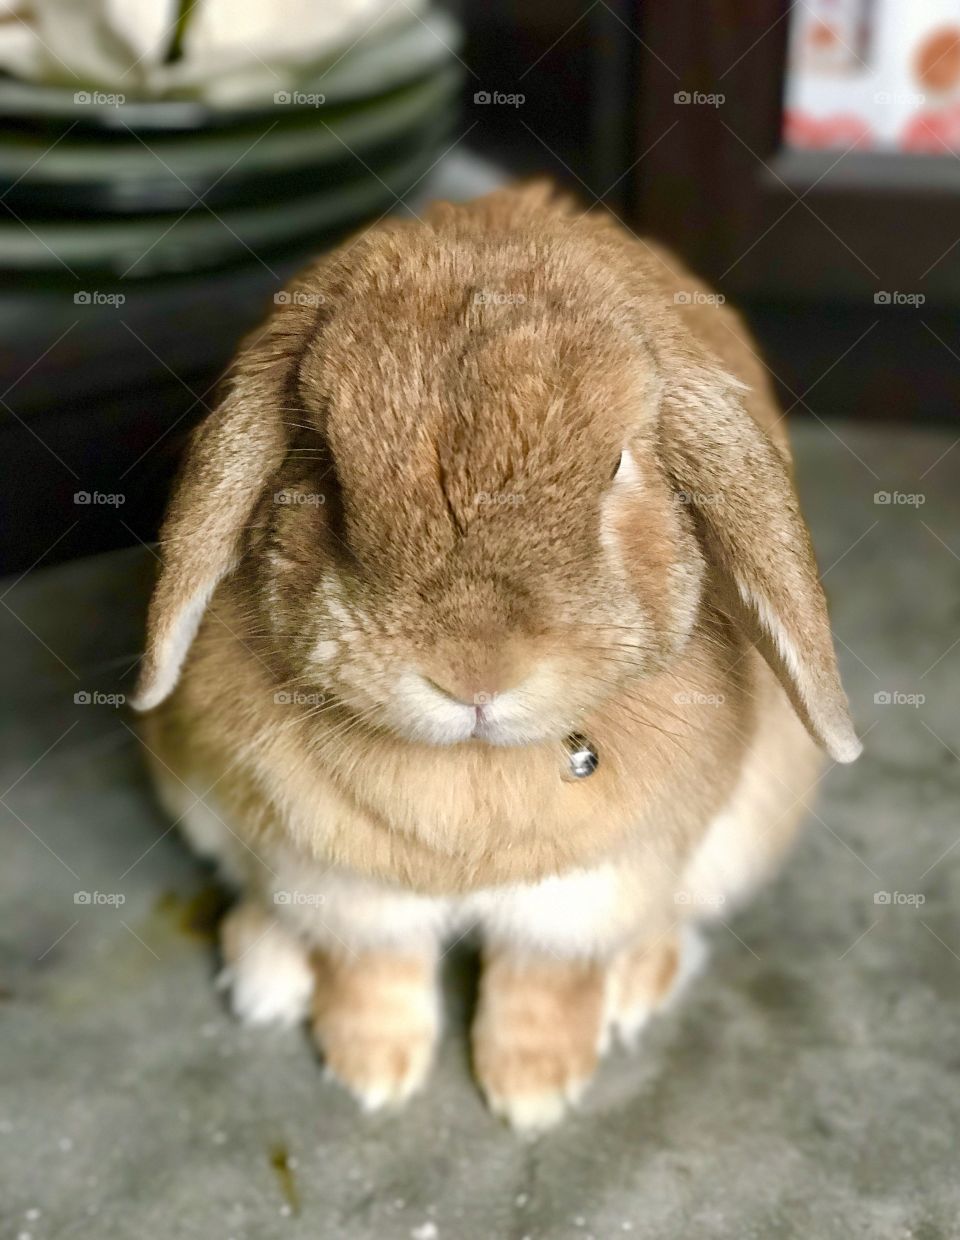 Rabbit bunny sitting